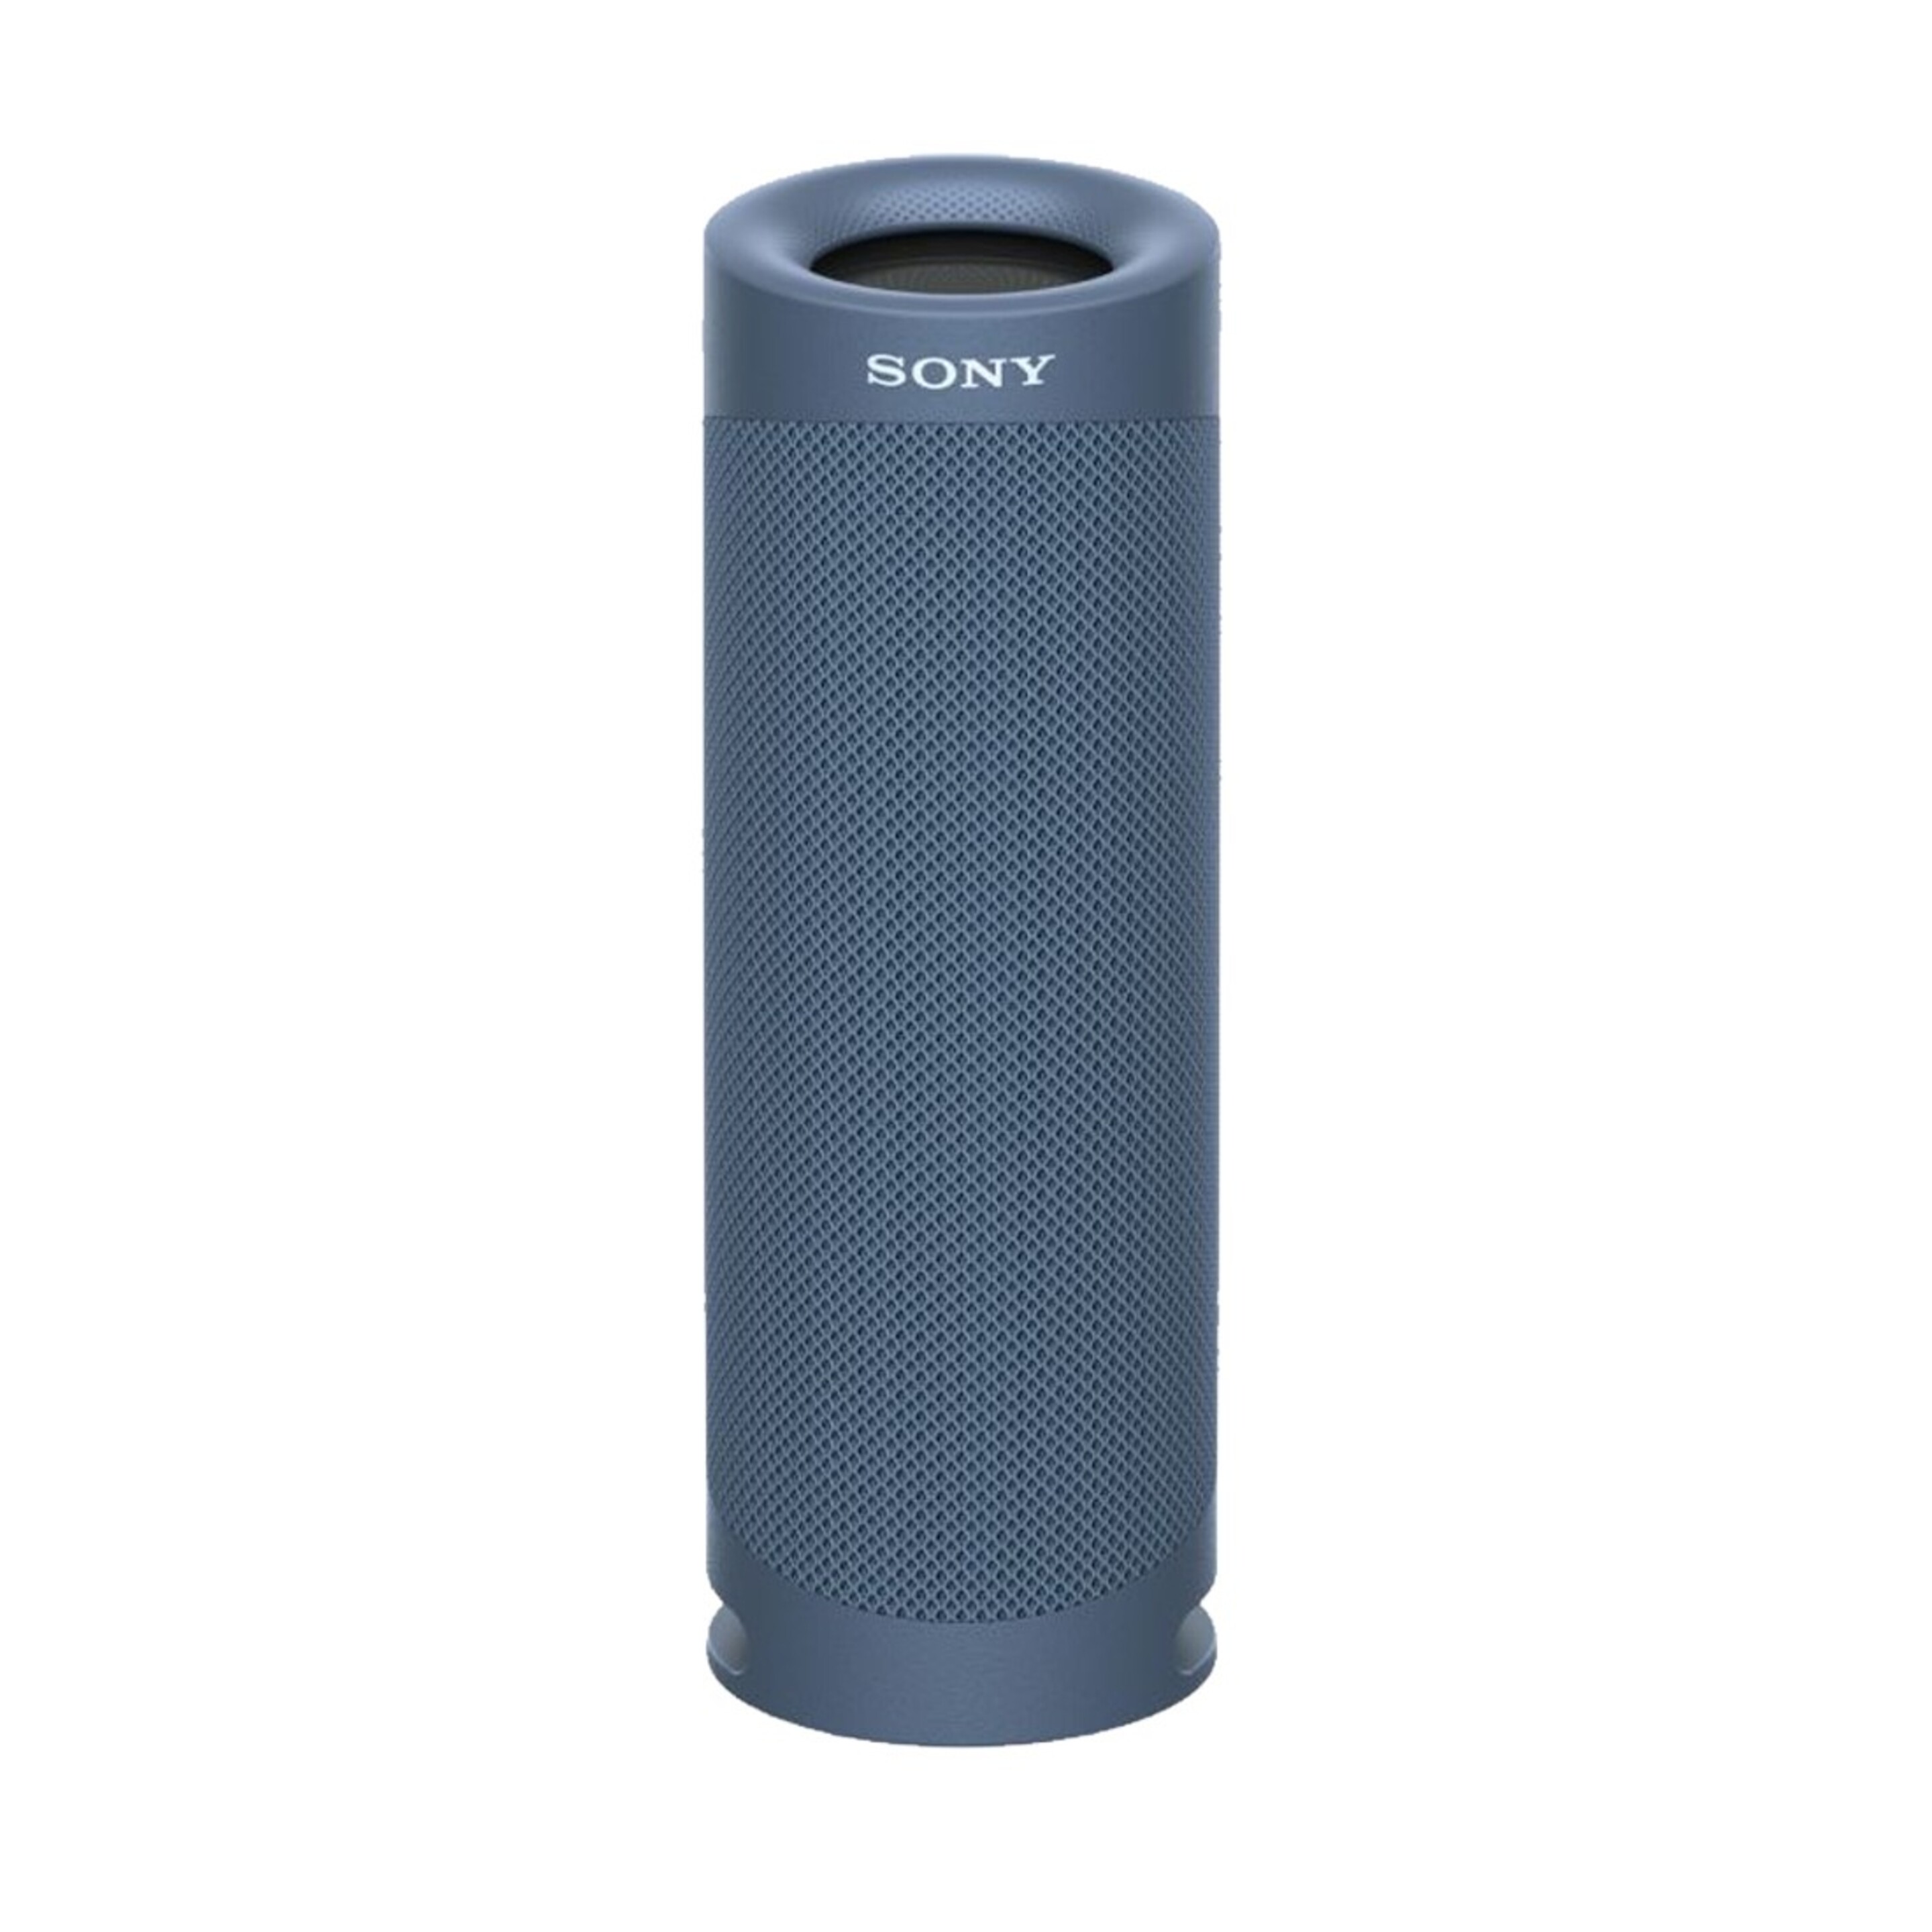 Altavoz Portátil Estéreo Sony Srs-xb23 - azul - 